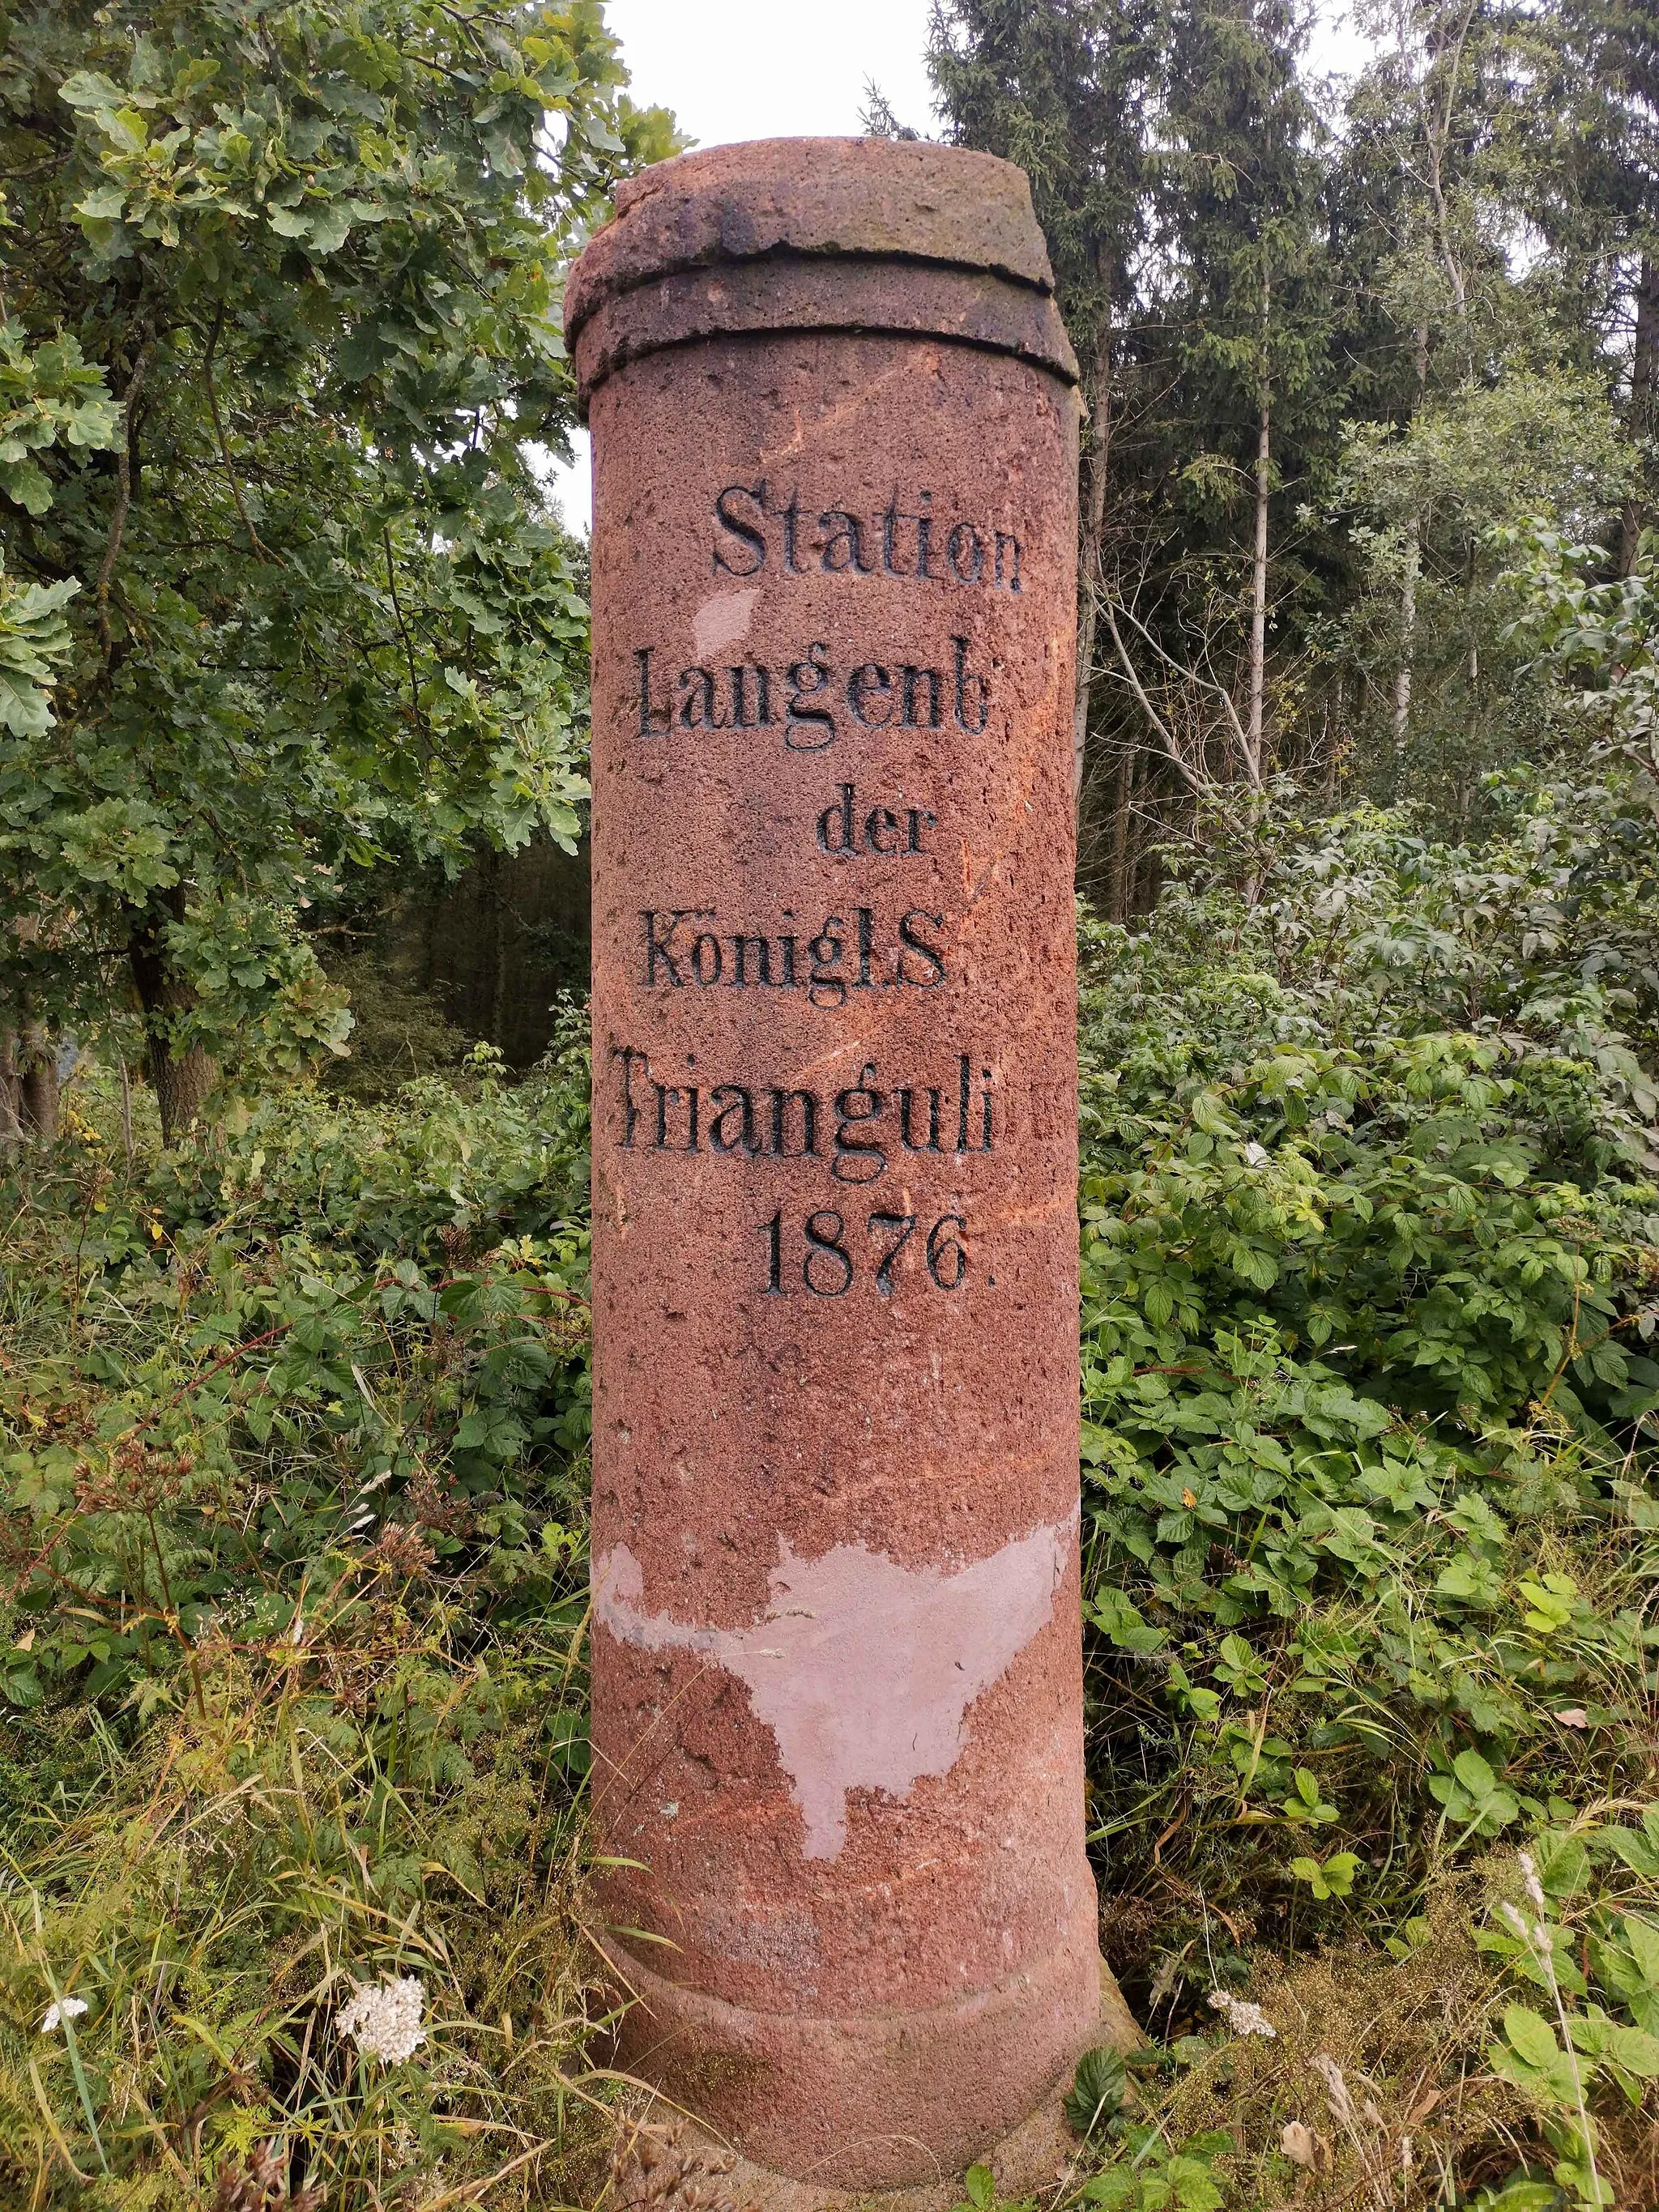 Photo showing: Station 156 der Königlich-Sächsischen Triangulation. Im Jahr 1876 wurde eine 2,30 m hohe, runde Säule aus rotem Rochlitzer Porphyr errichtet. Ein Messpunkt 2. Ordnung. Die Säule ist ein Technisches Denkmal.